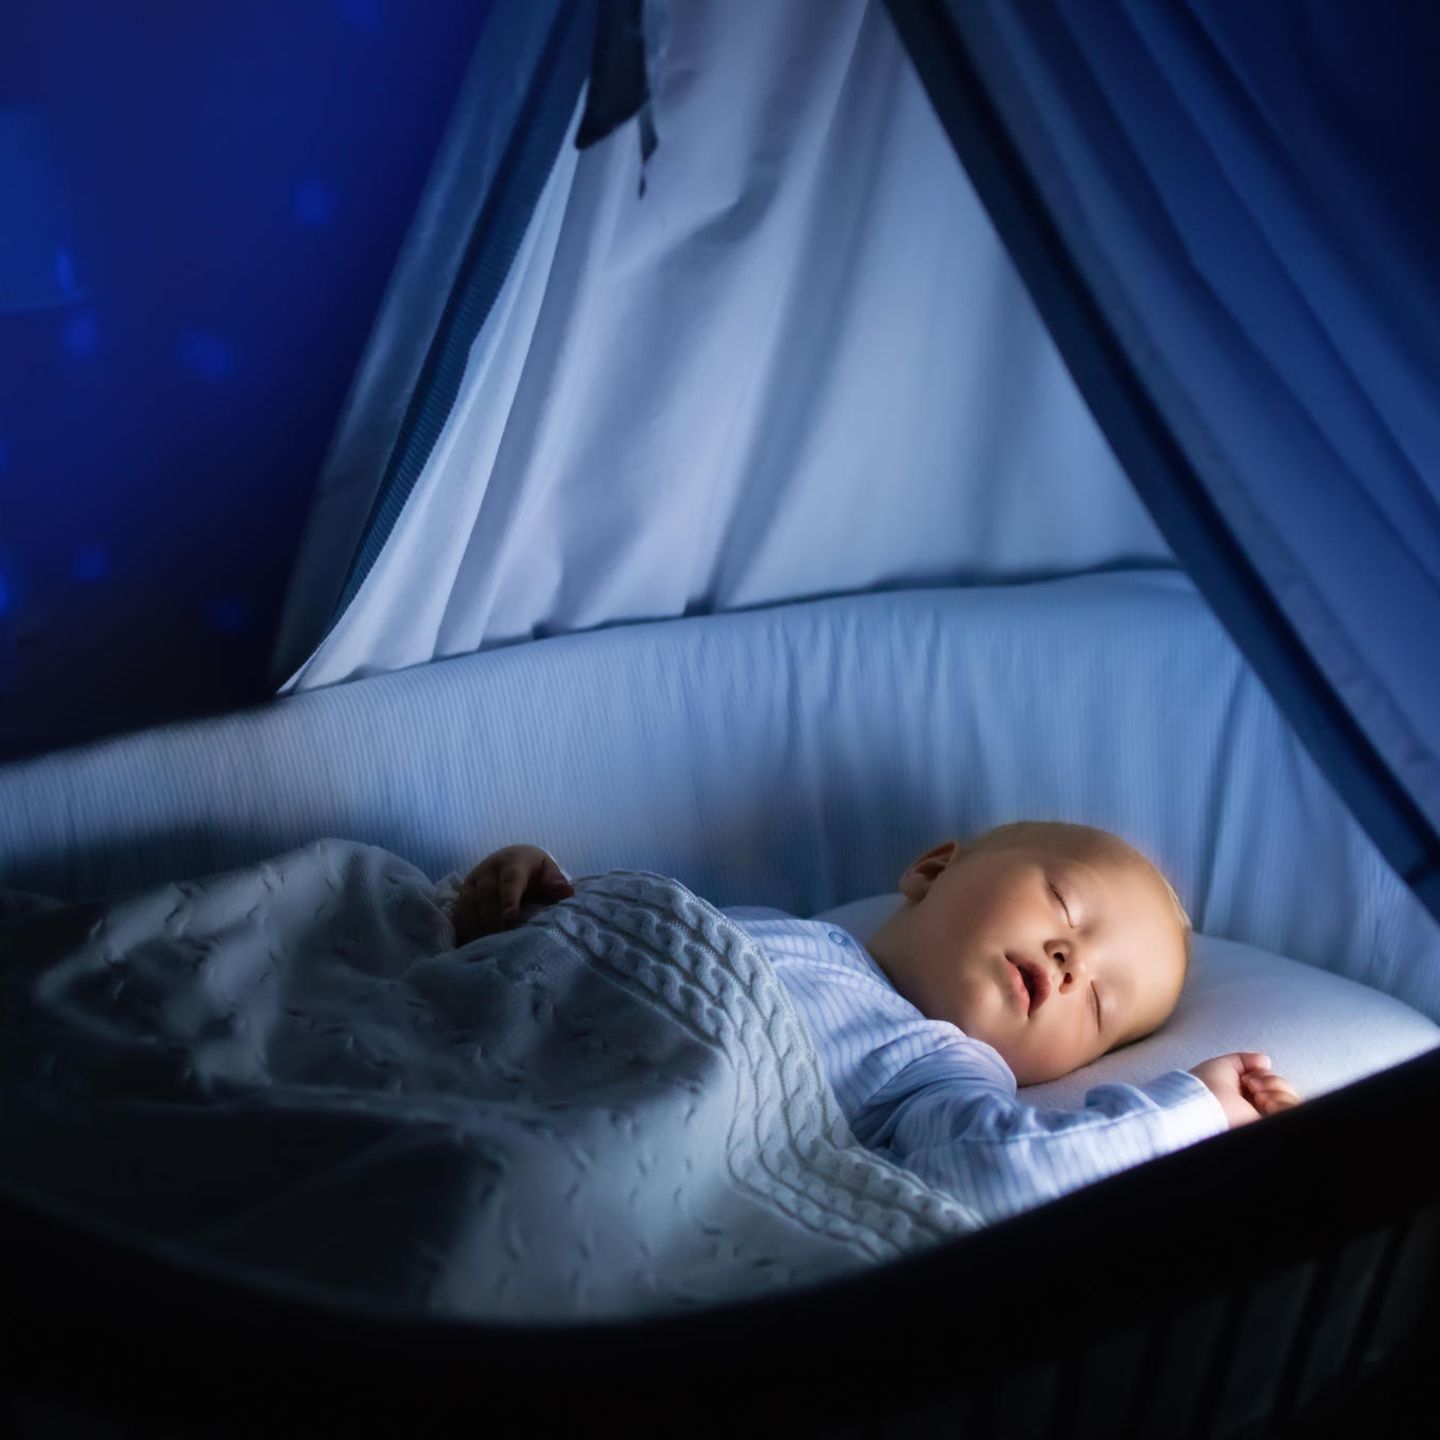 Einschlafhilfe Fur Ihr Baby Diese Funf Tipps Helfen Wirklich Stern De